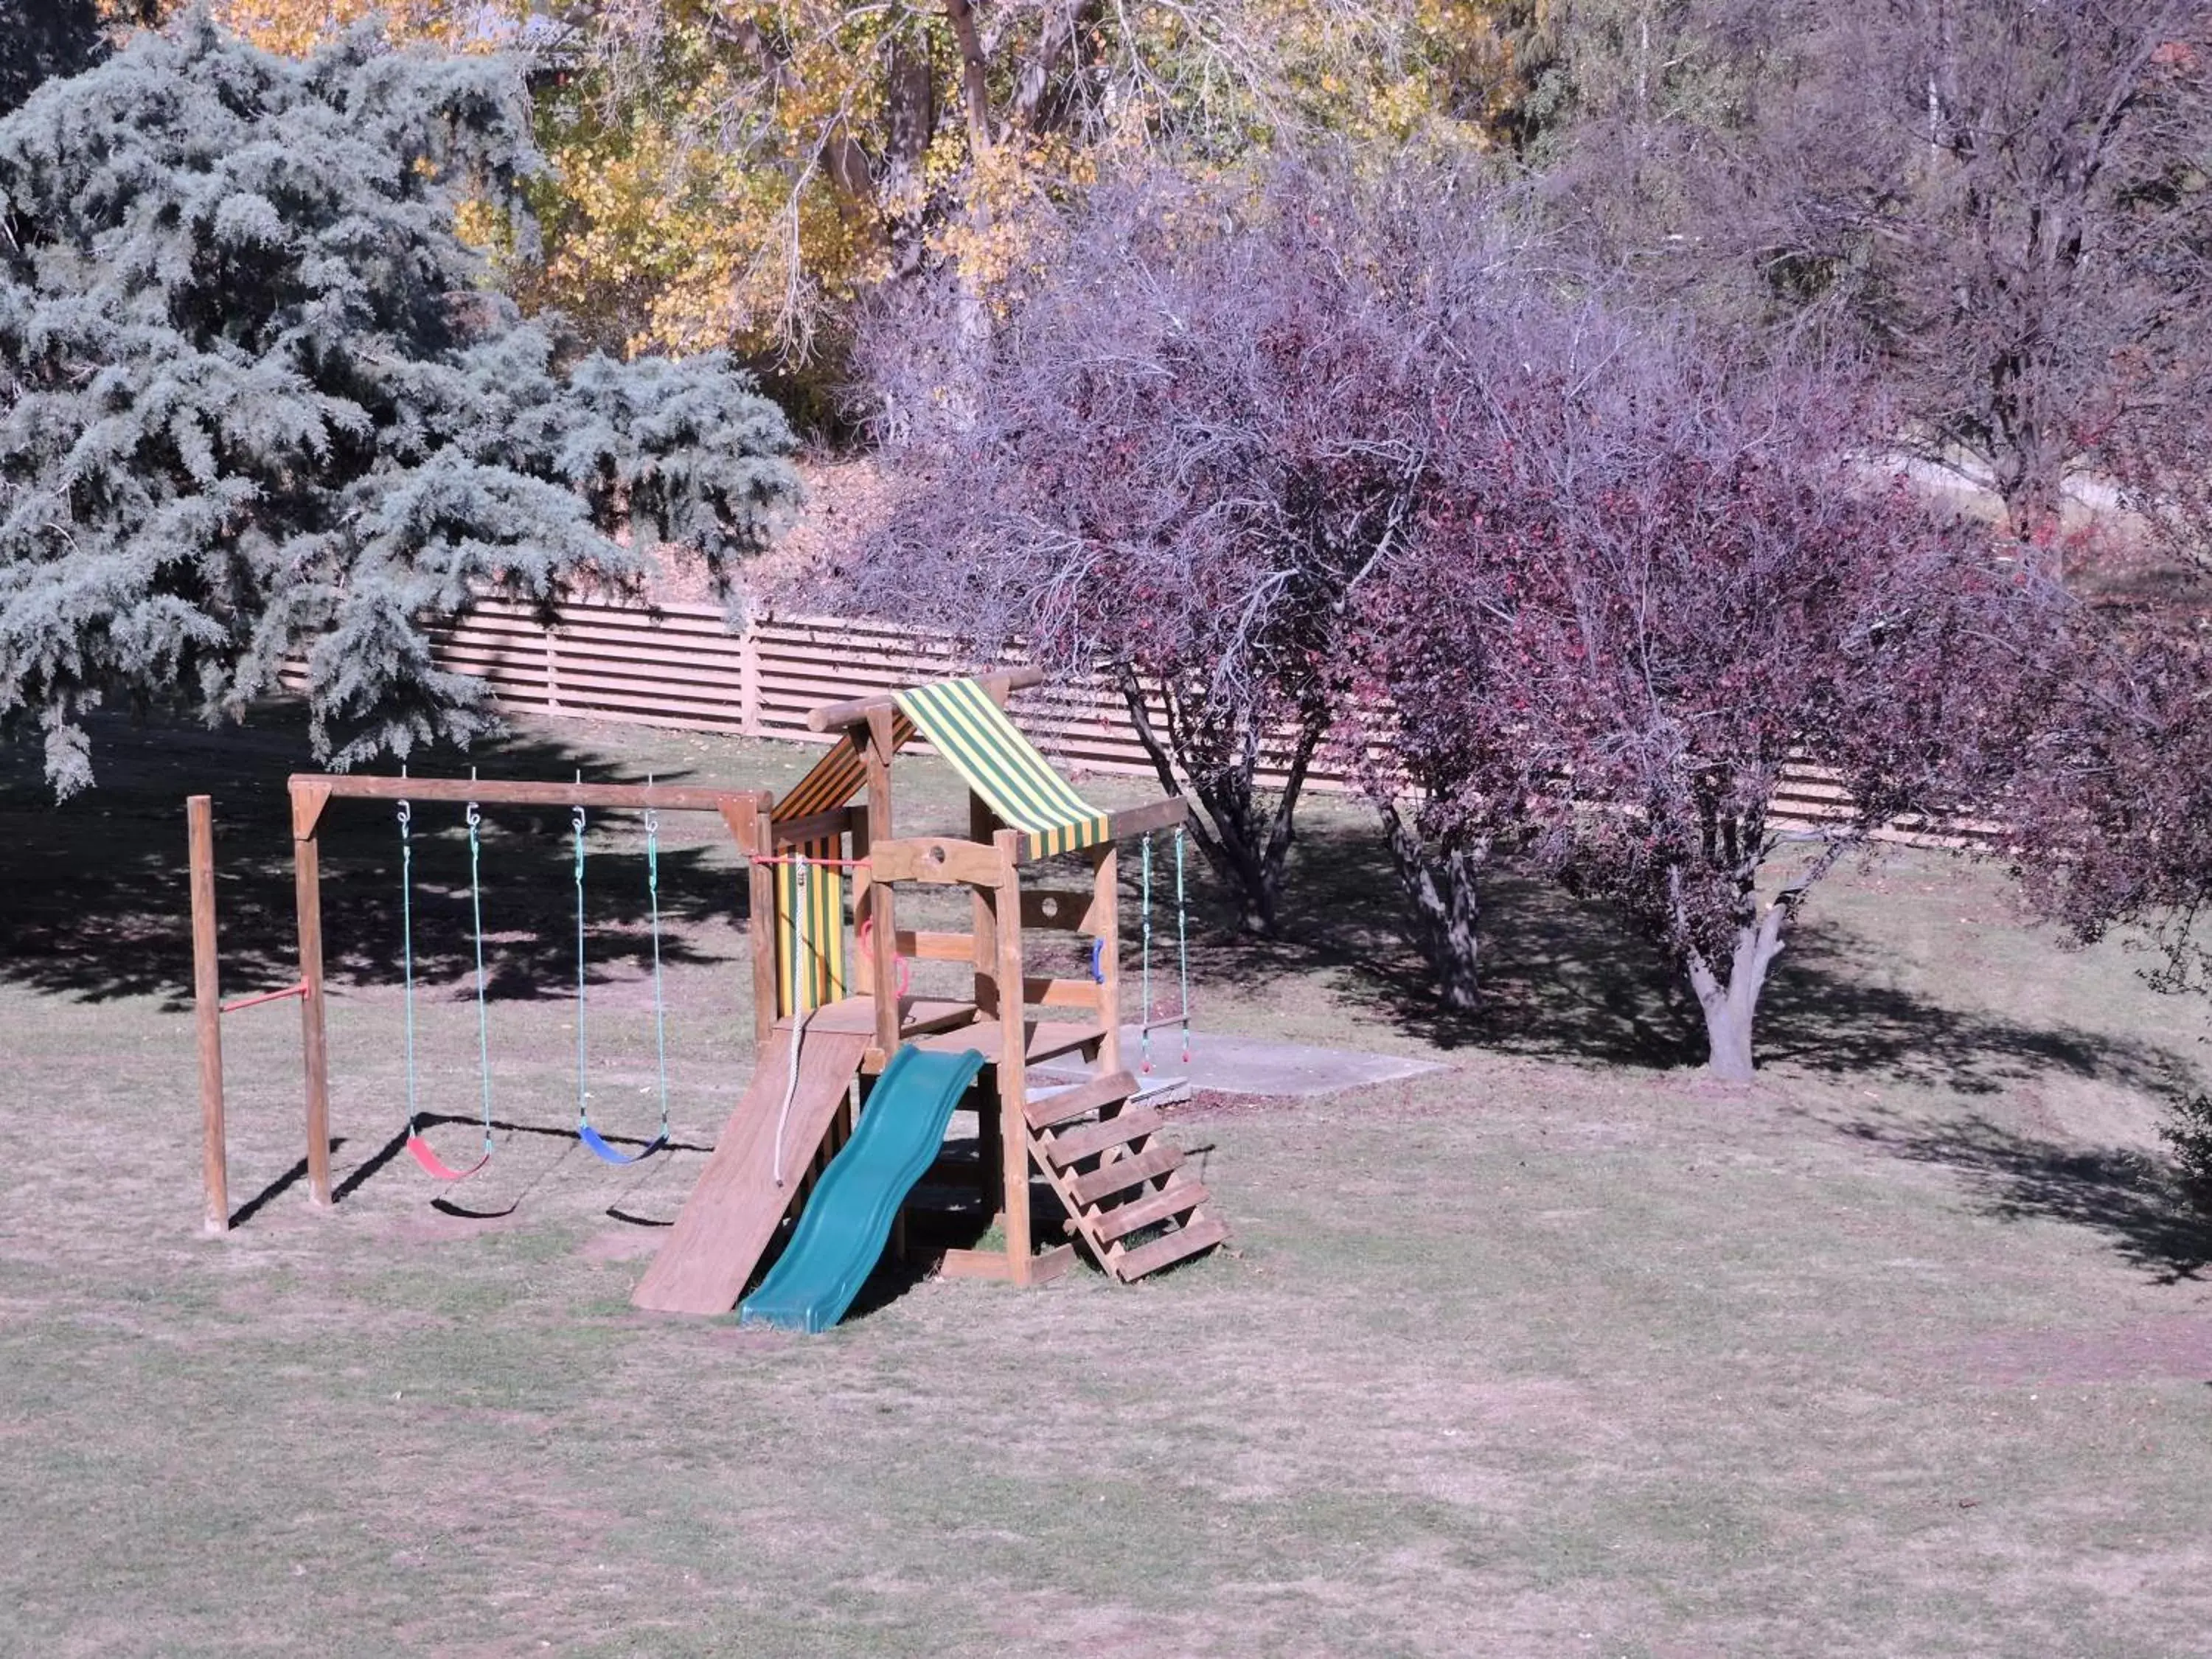 Children play ground, Children's Play Area in Siesta Villa